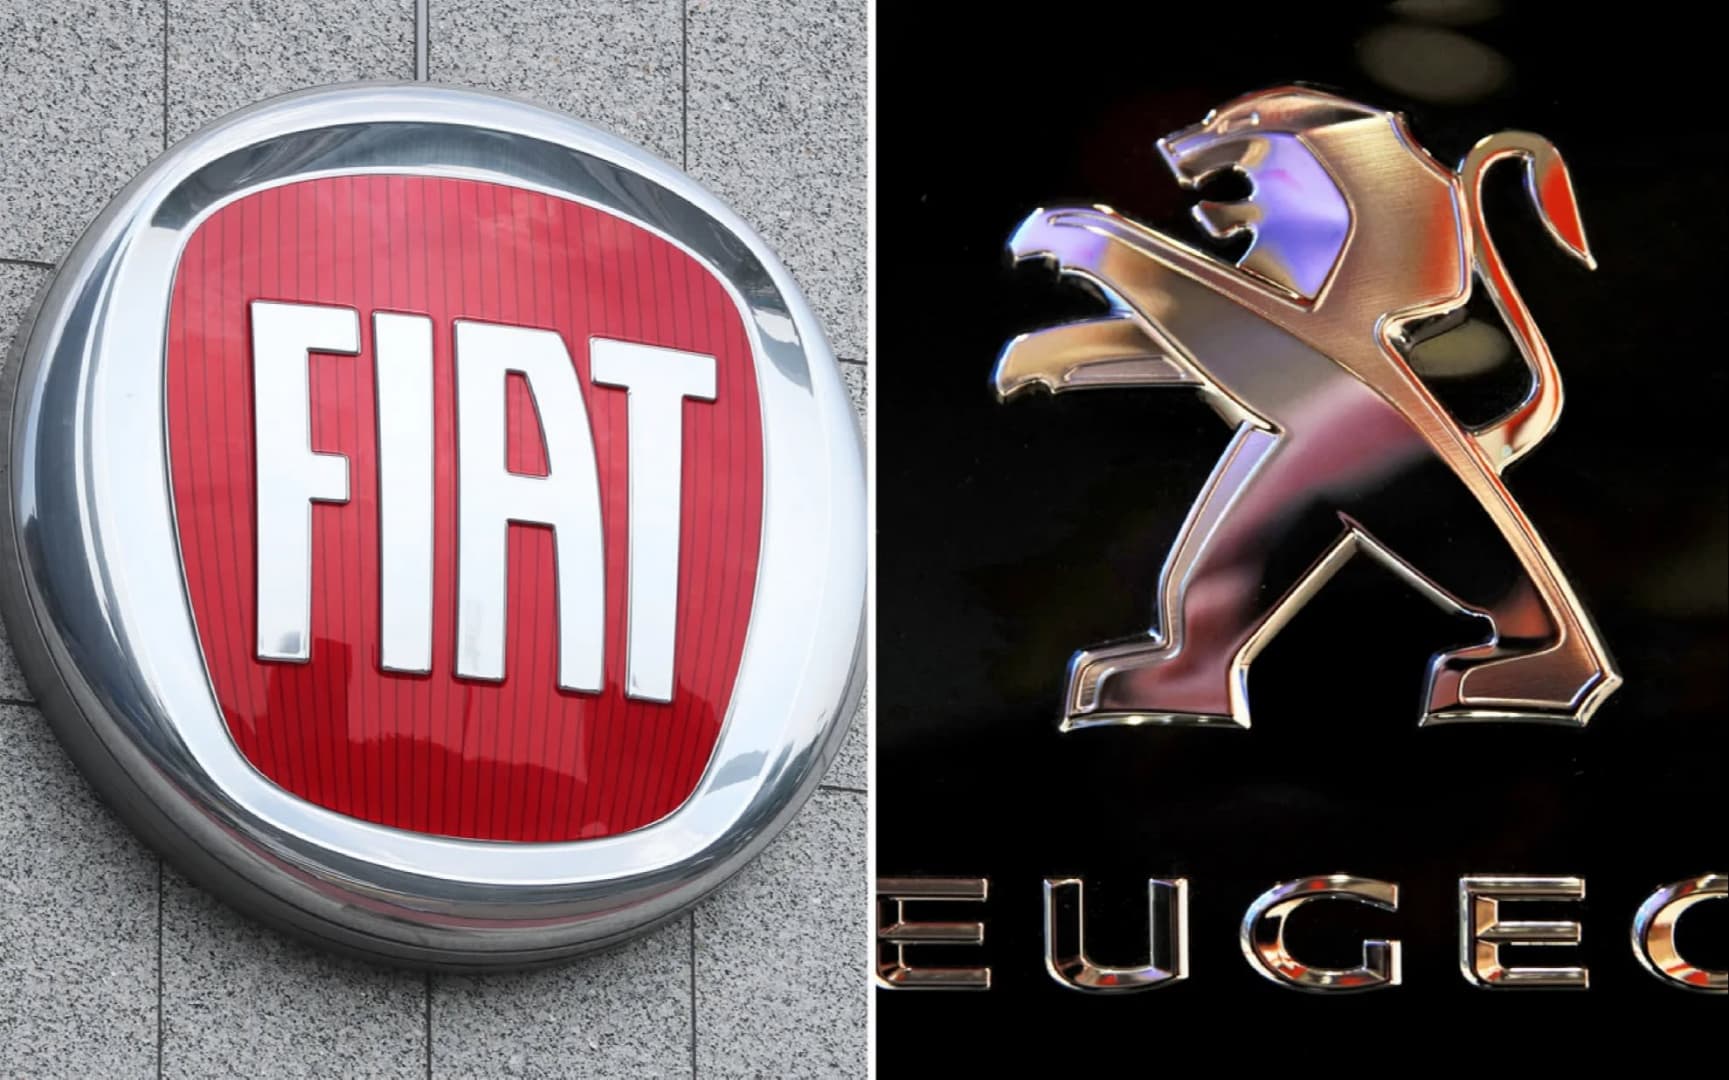 Értesülések szerint a PSA csoport felügyelőbizottsága jóváhagyta a fúziót a Fiat-Chryslerrel